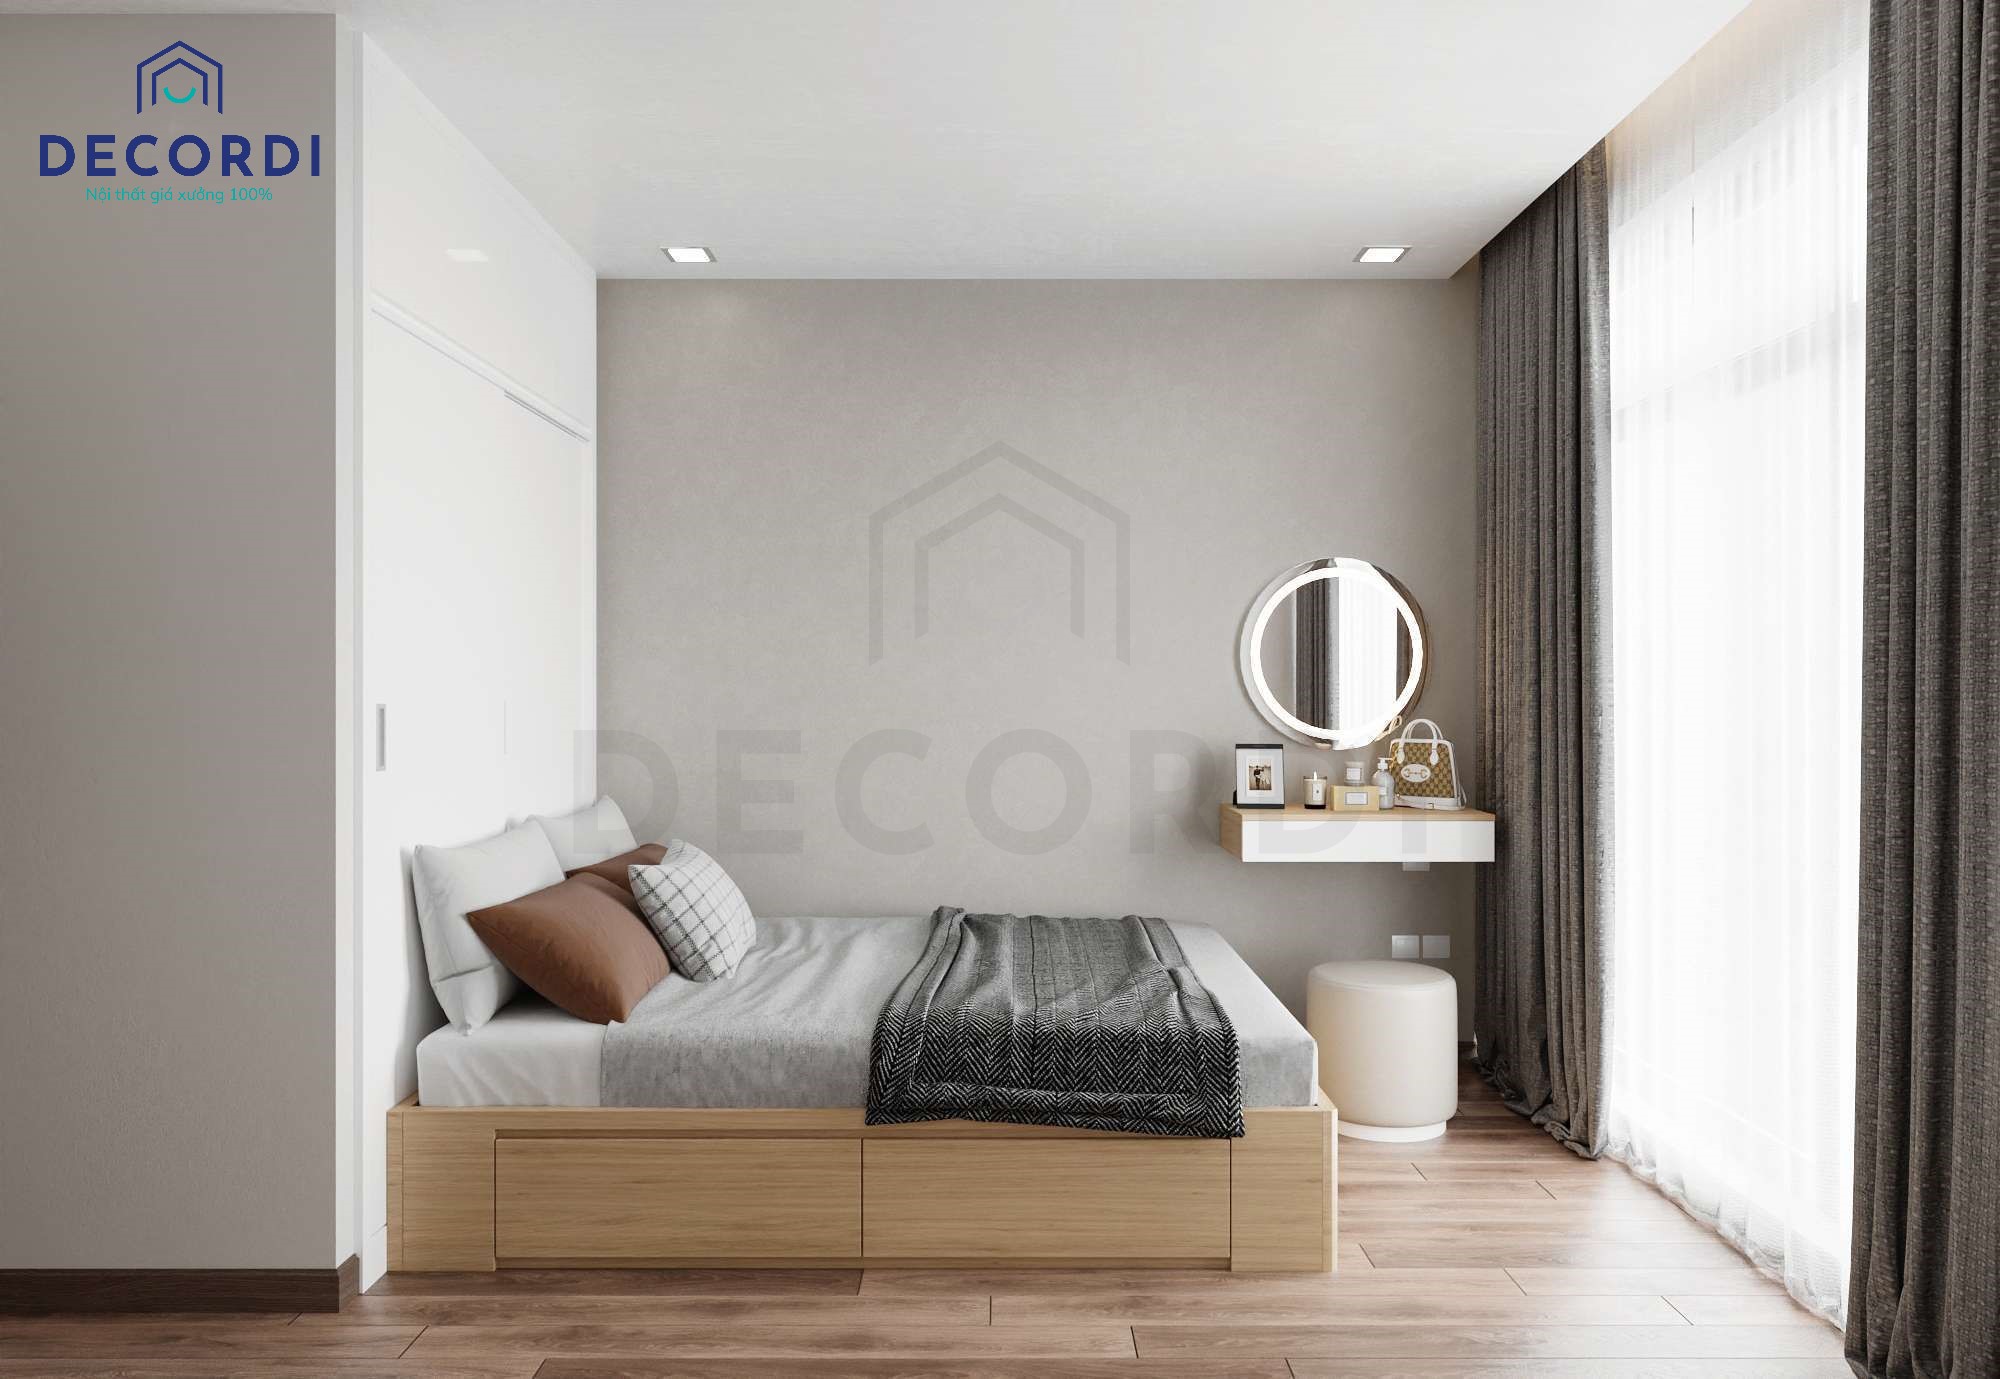 Giường ngủ có ngăn kéo kết hợp với chiếc tủ quần áo cao đụng trần tối ưu diện tích sử dụng